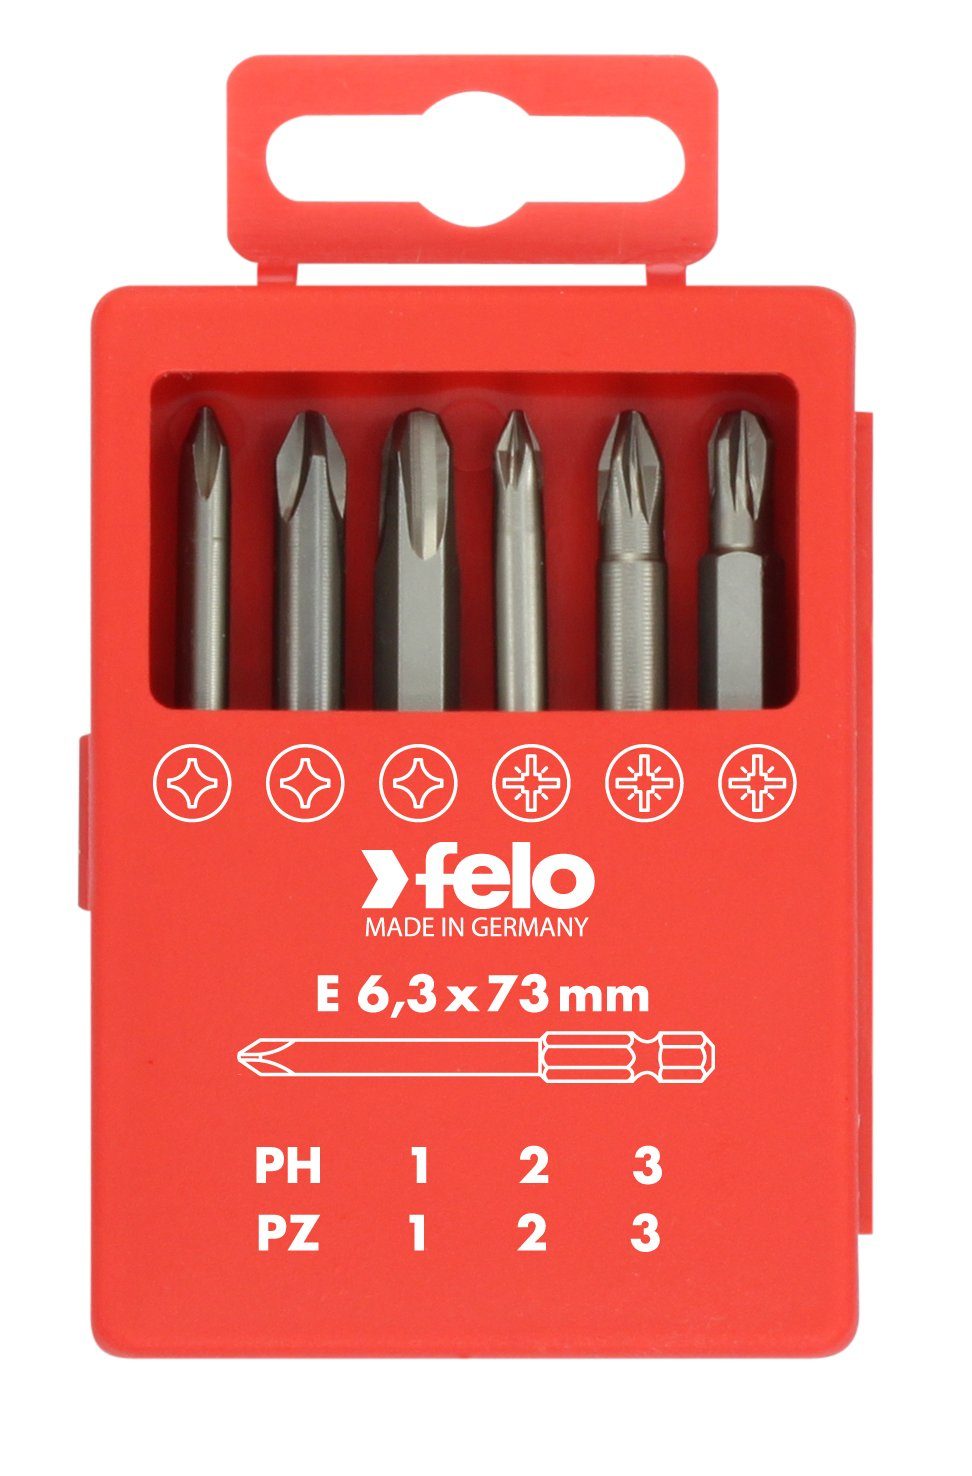 Felo Bit-Set Felo Profi Bitbox Torx 73 mm, 6-teilig PZ, PH